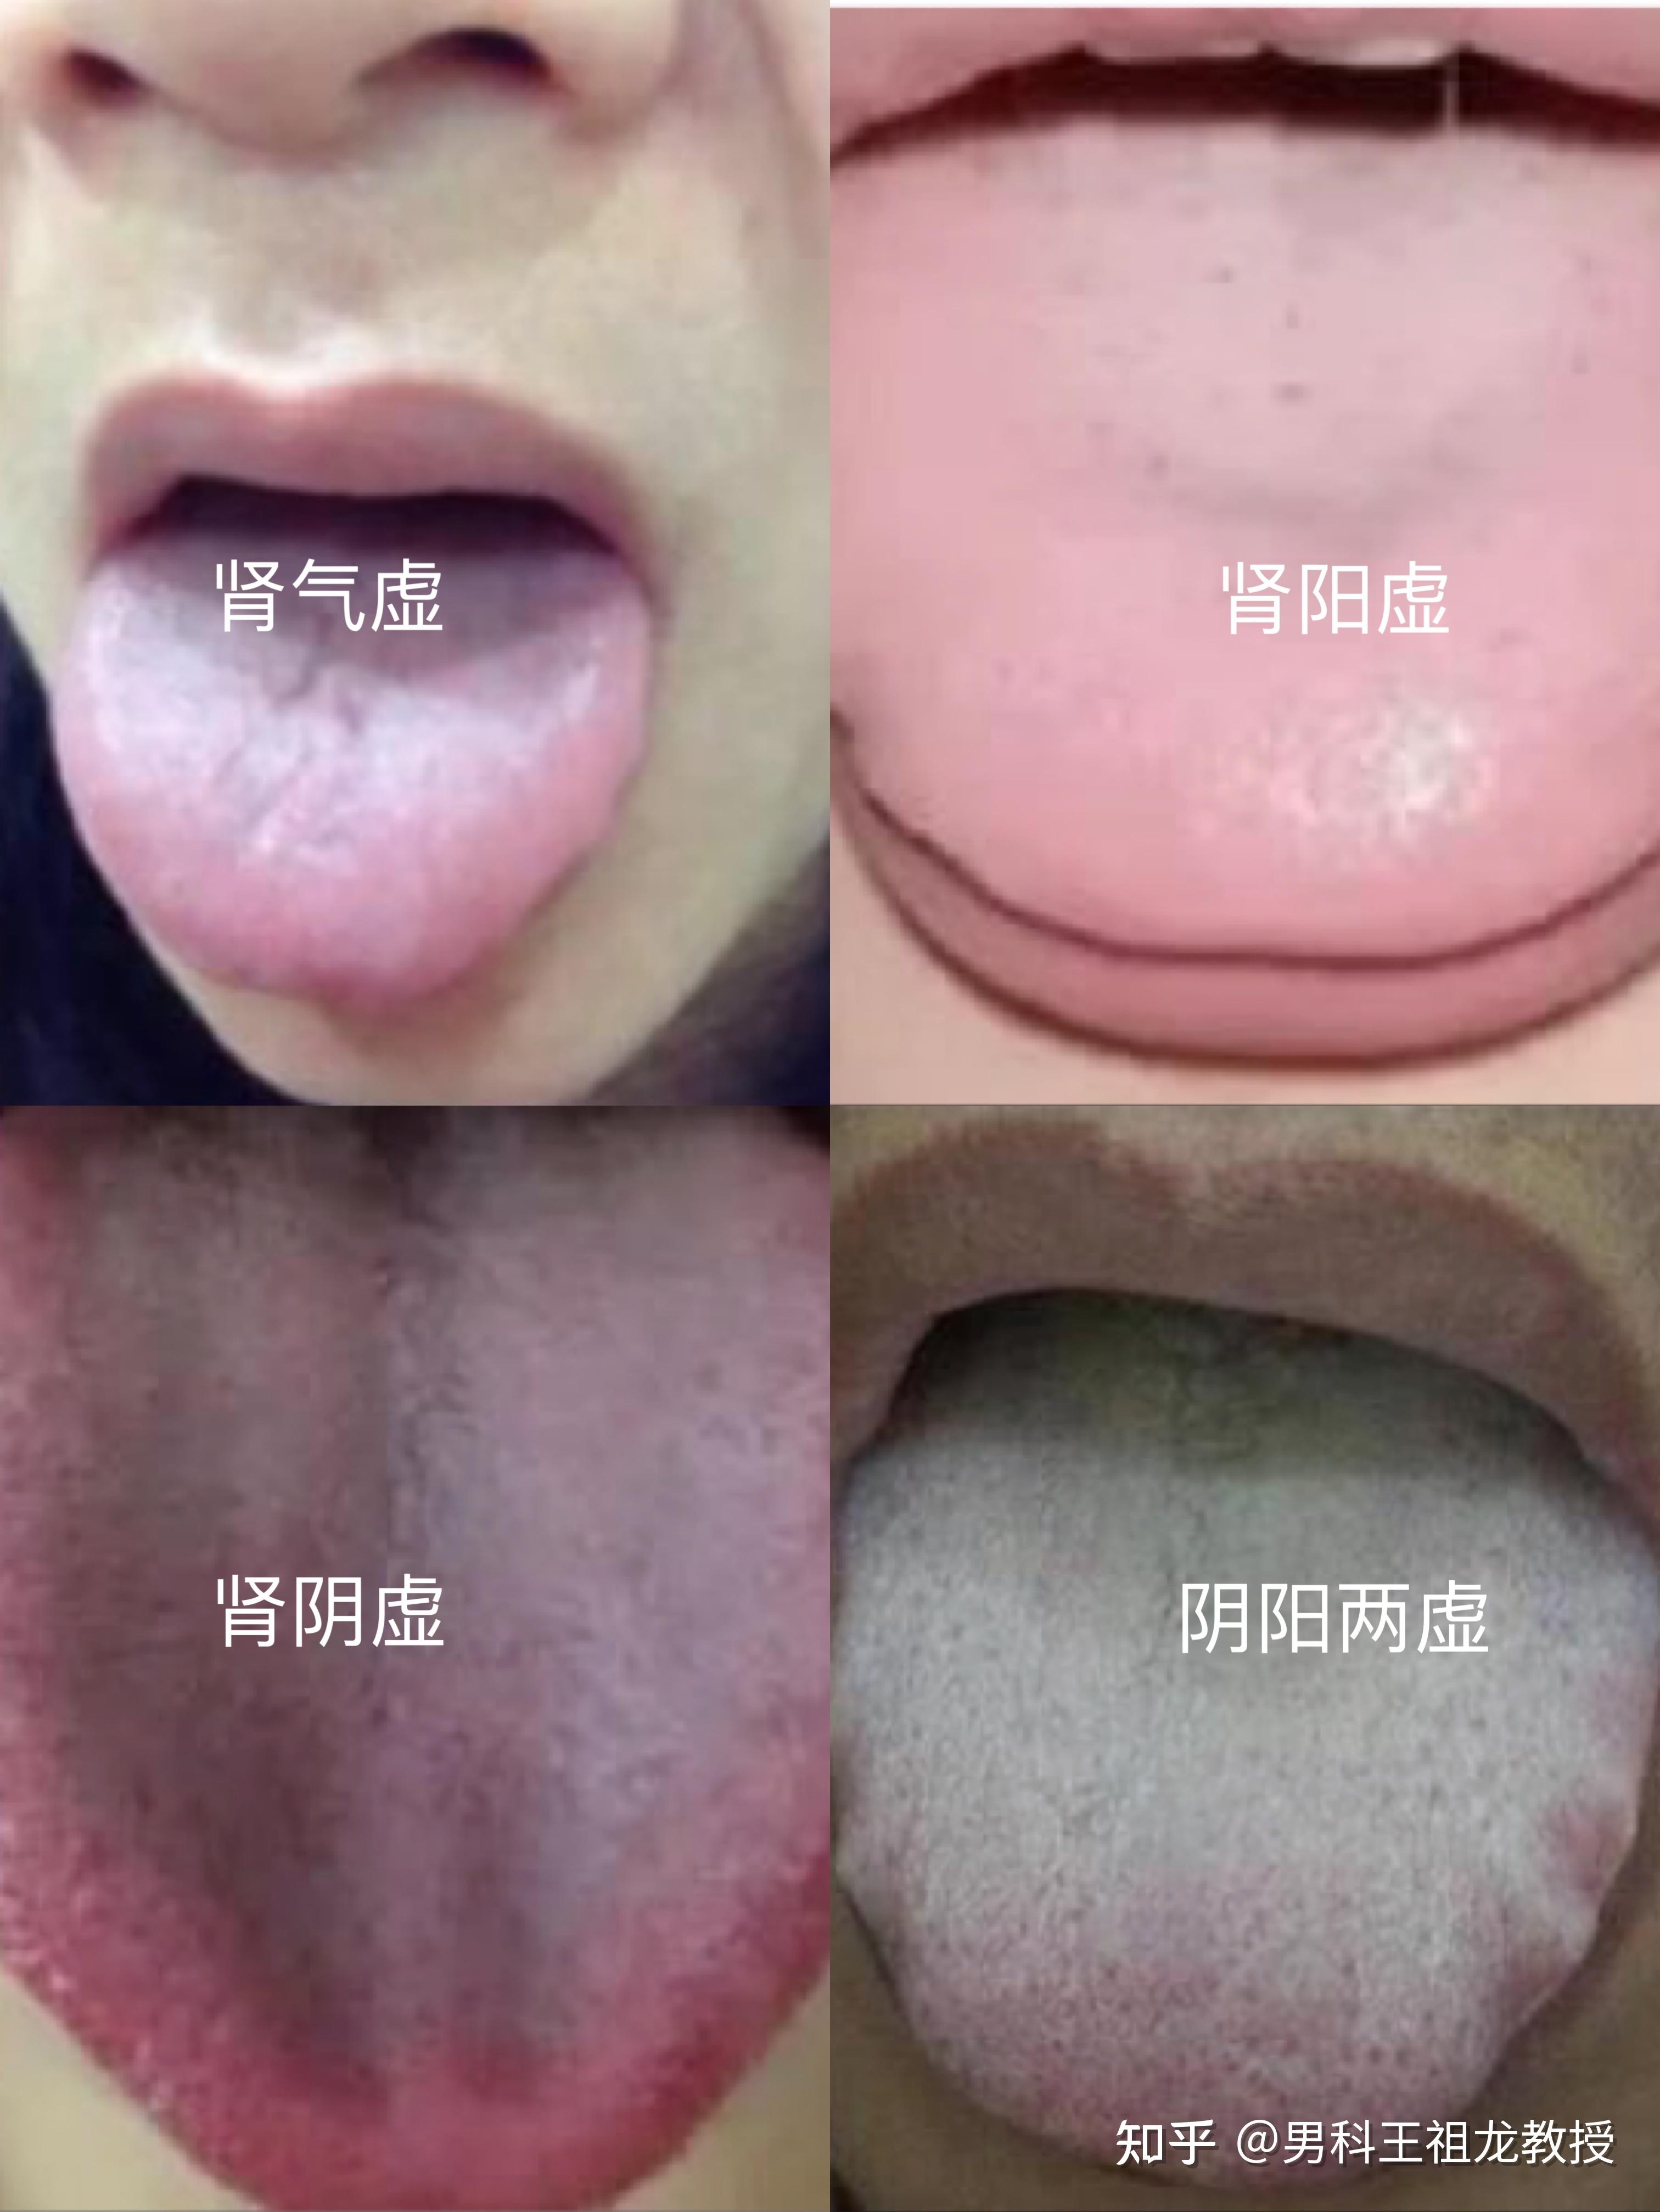 舌苔图片诊症图片